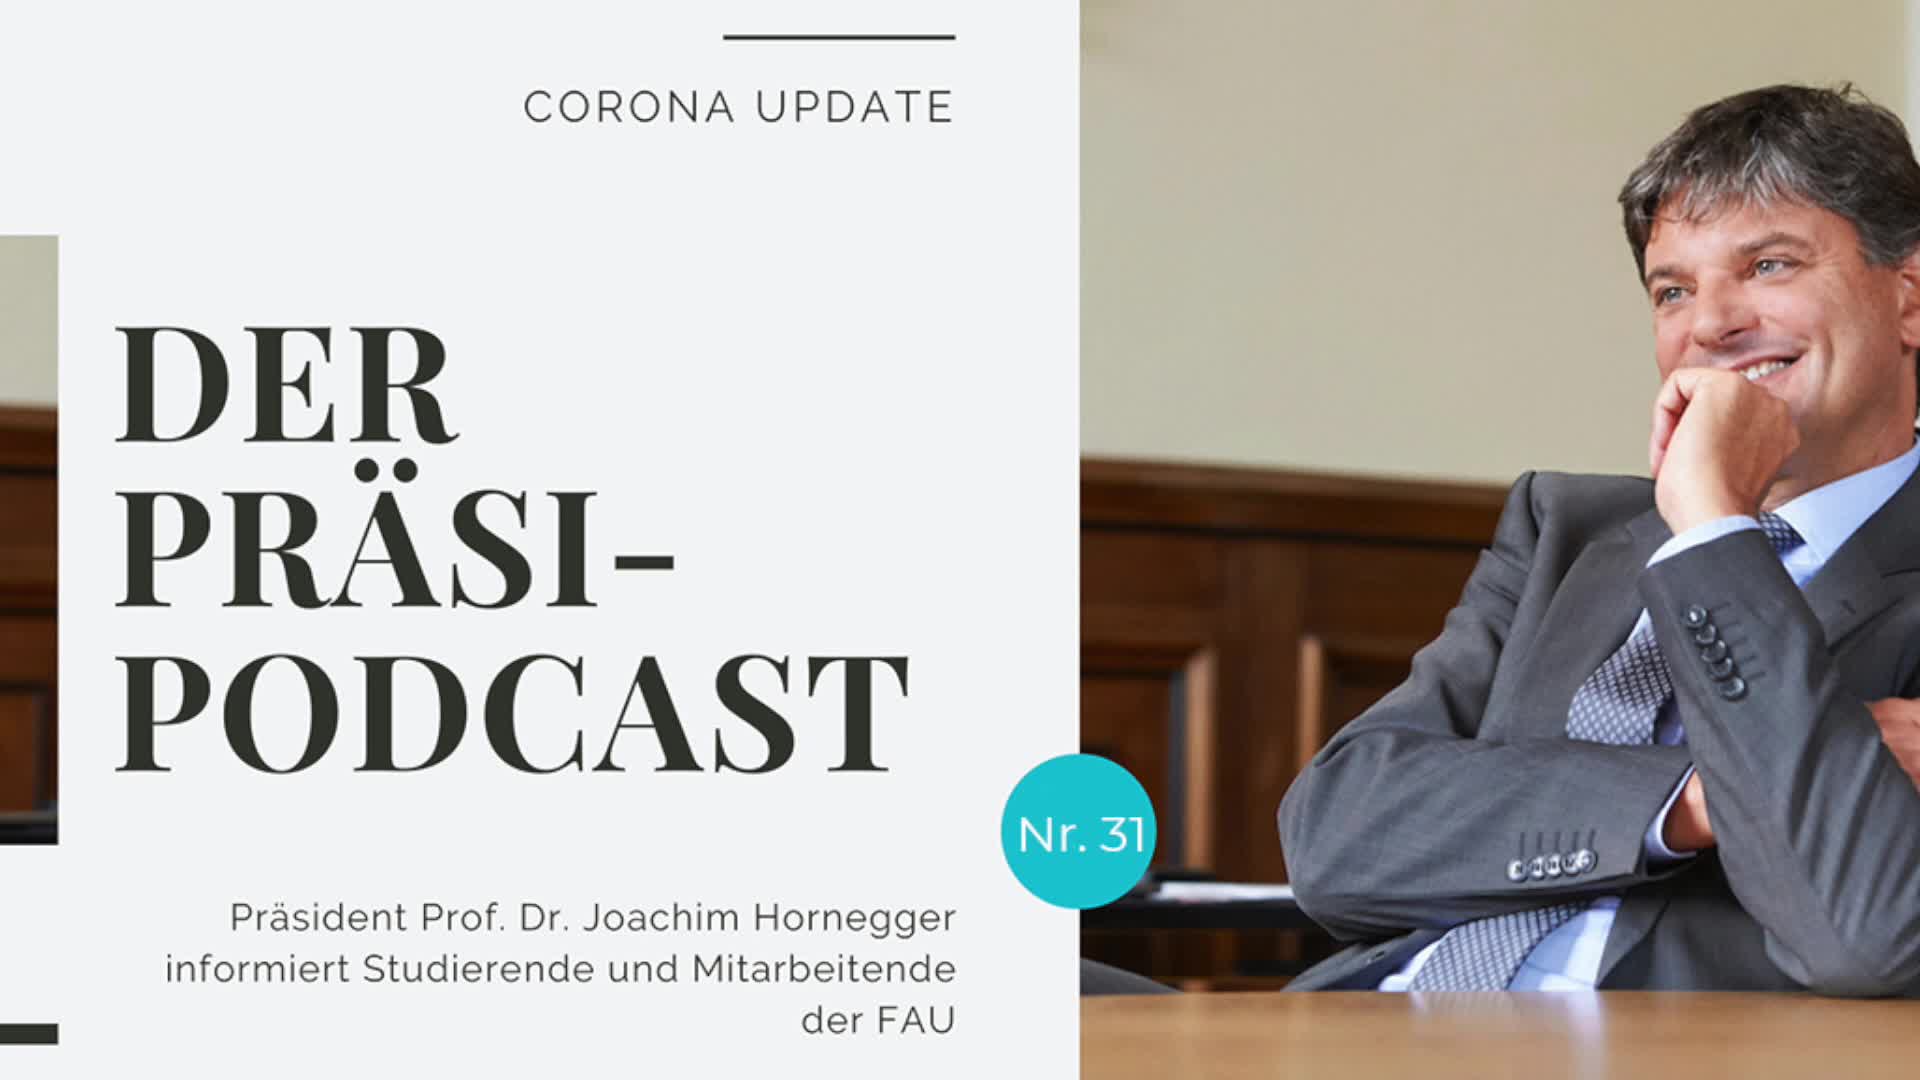 „Der Präsi-Podcast“ vom 18. November 2020 preview image